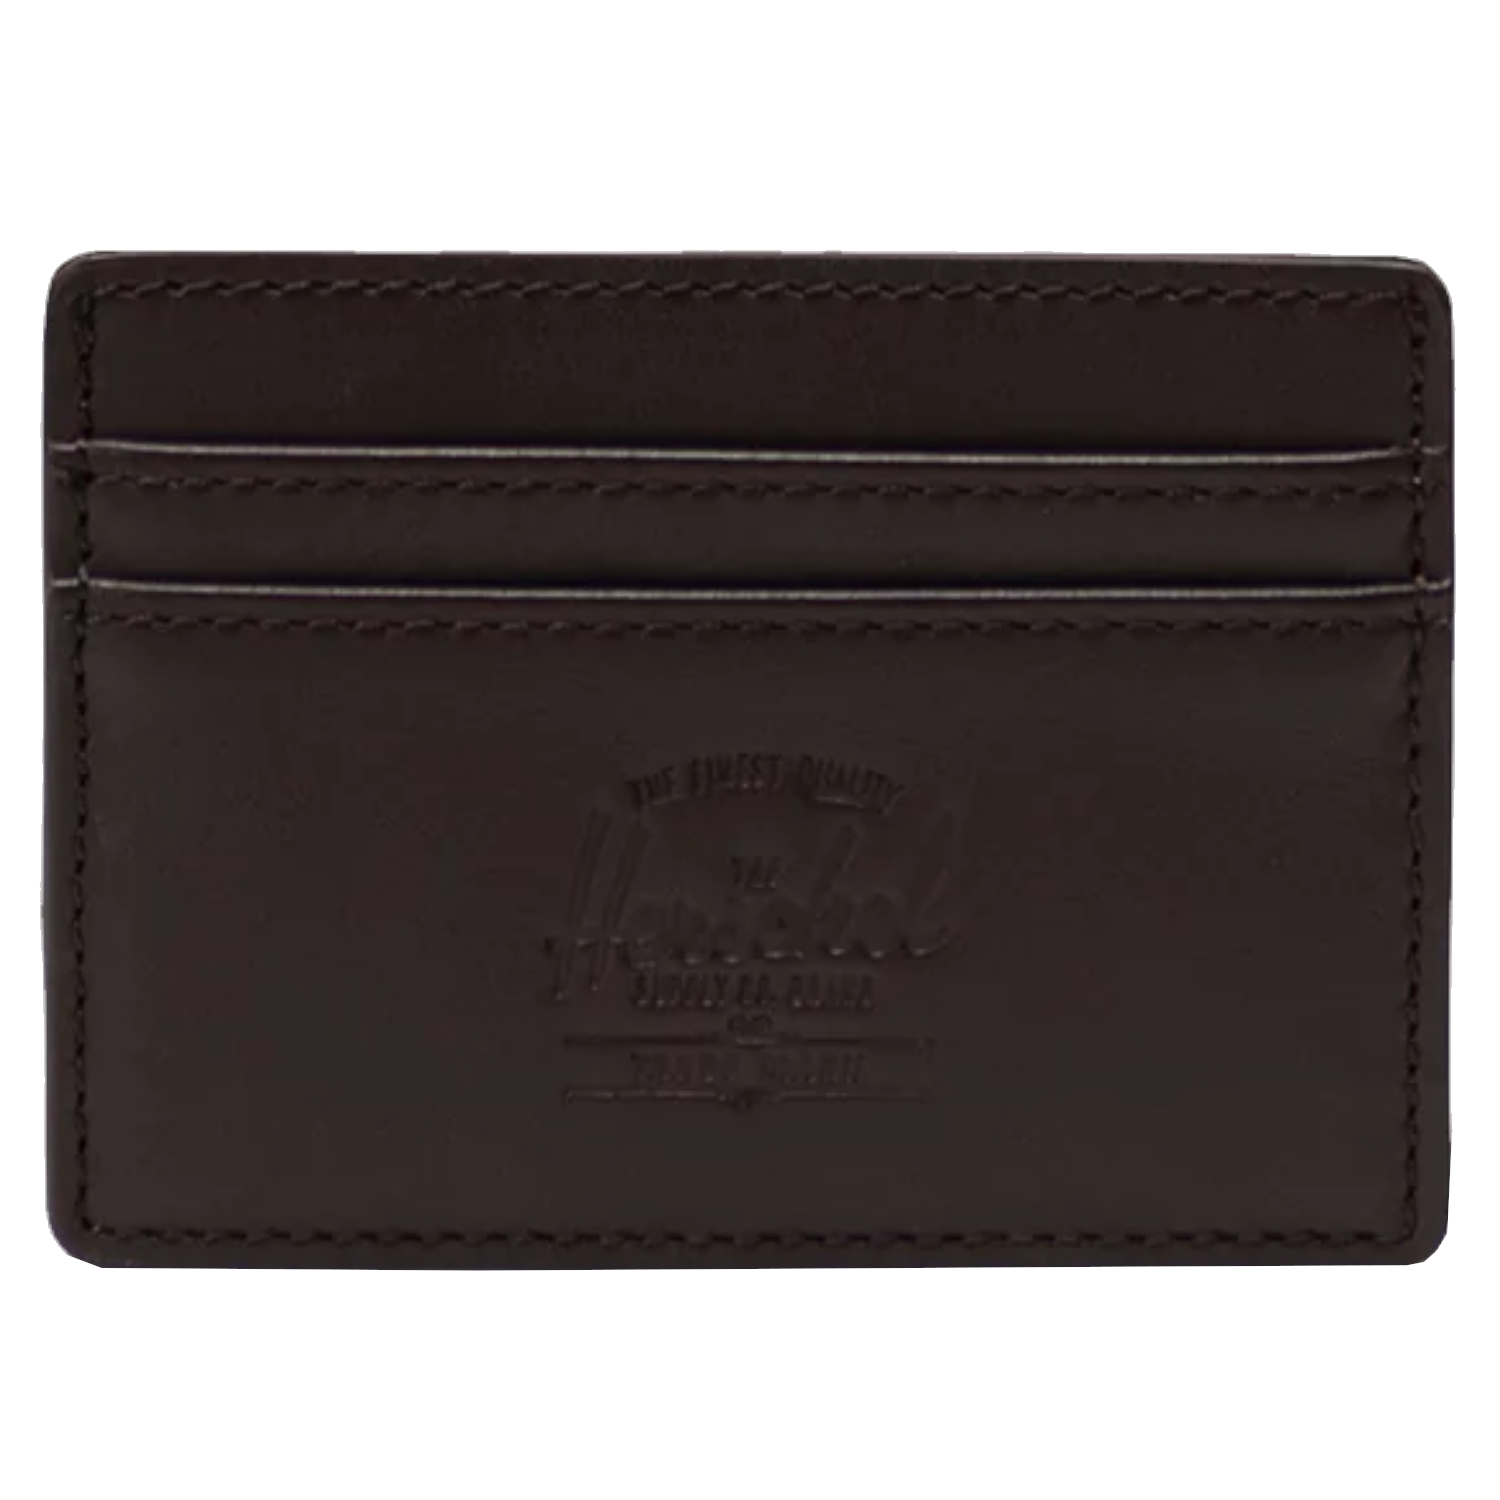 цена Кошелек Herschel Herschel Charlie Leather RFID Wallet, коричневый